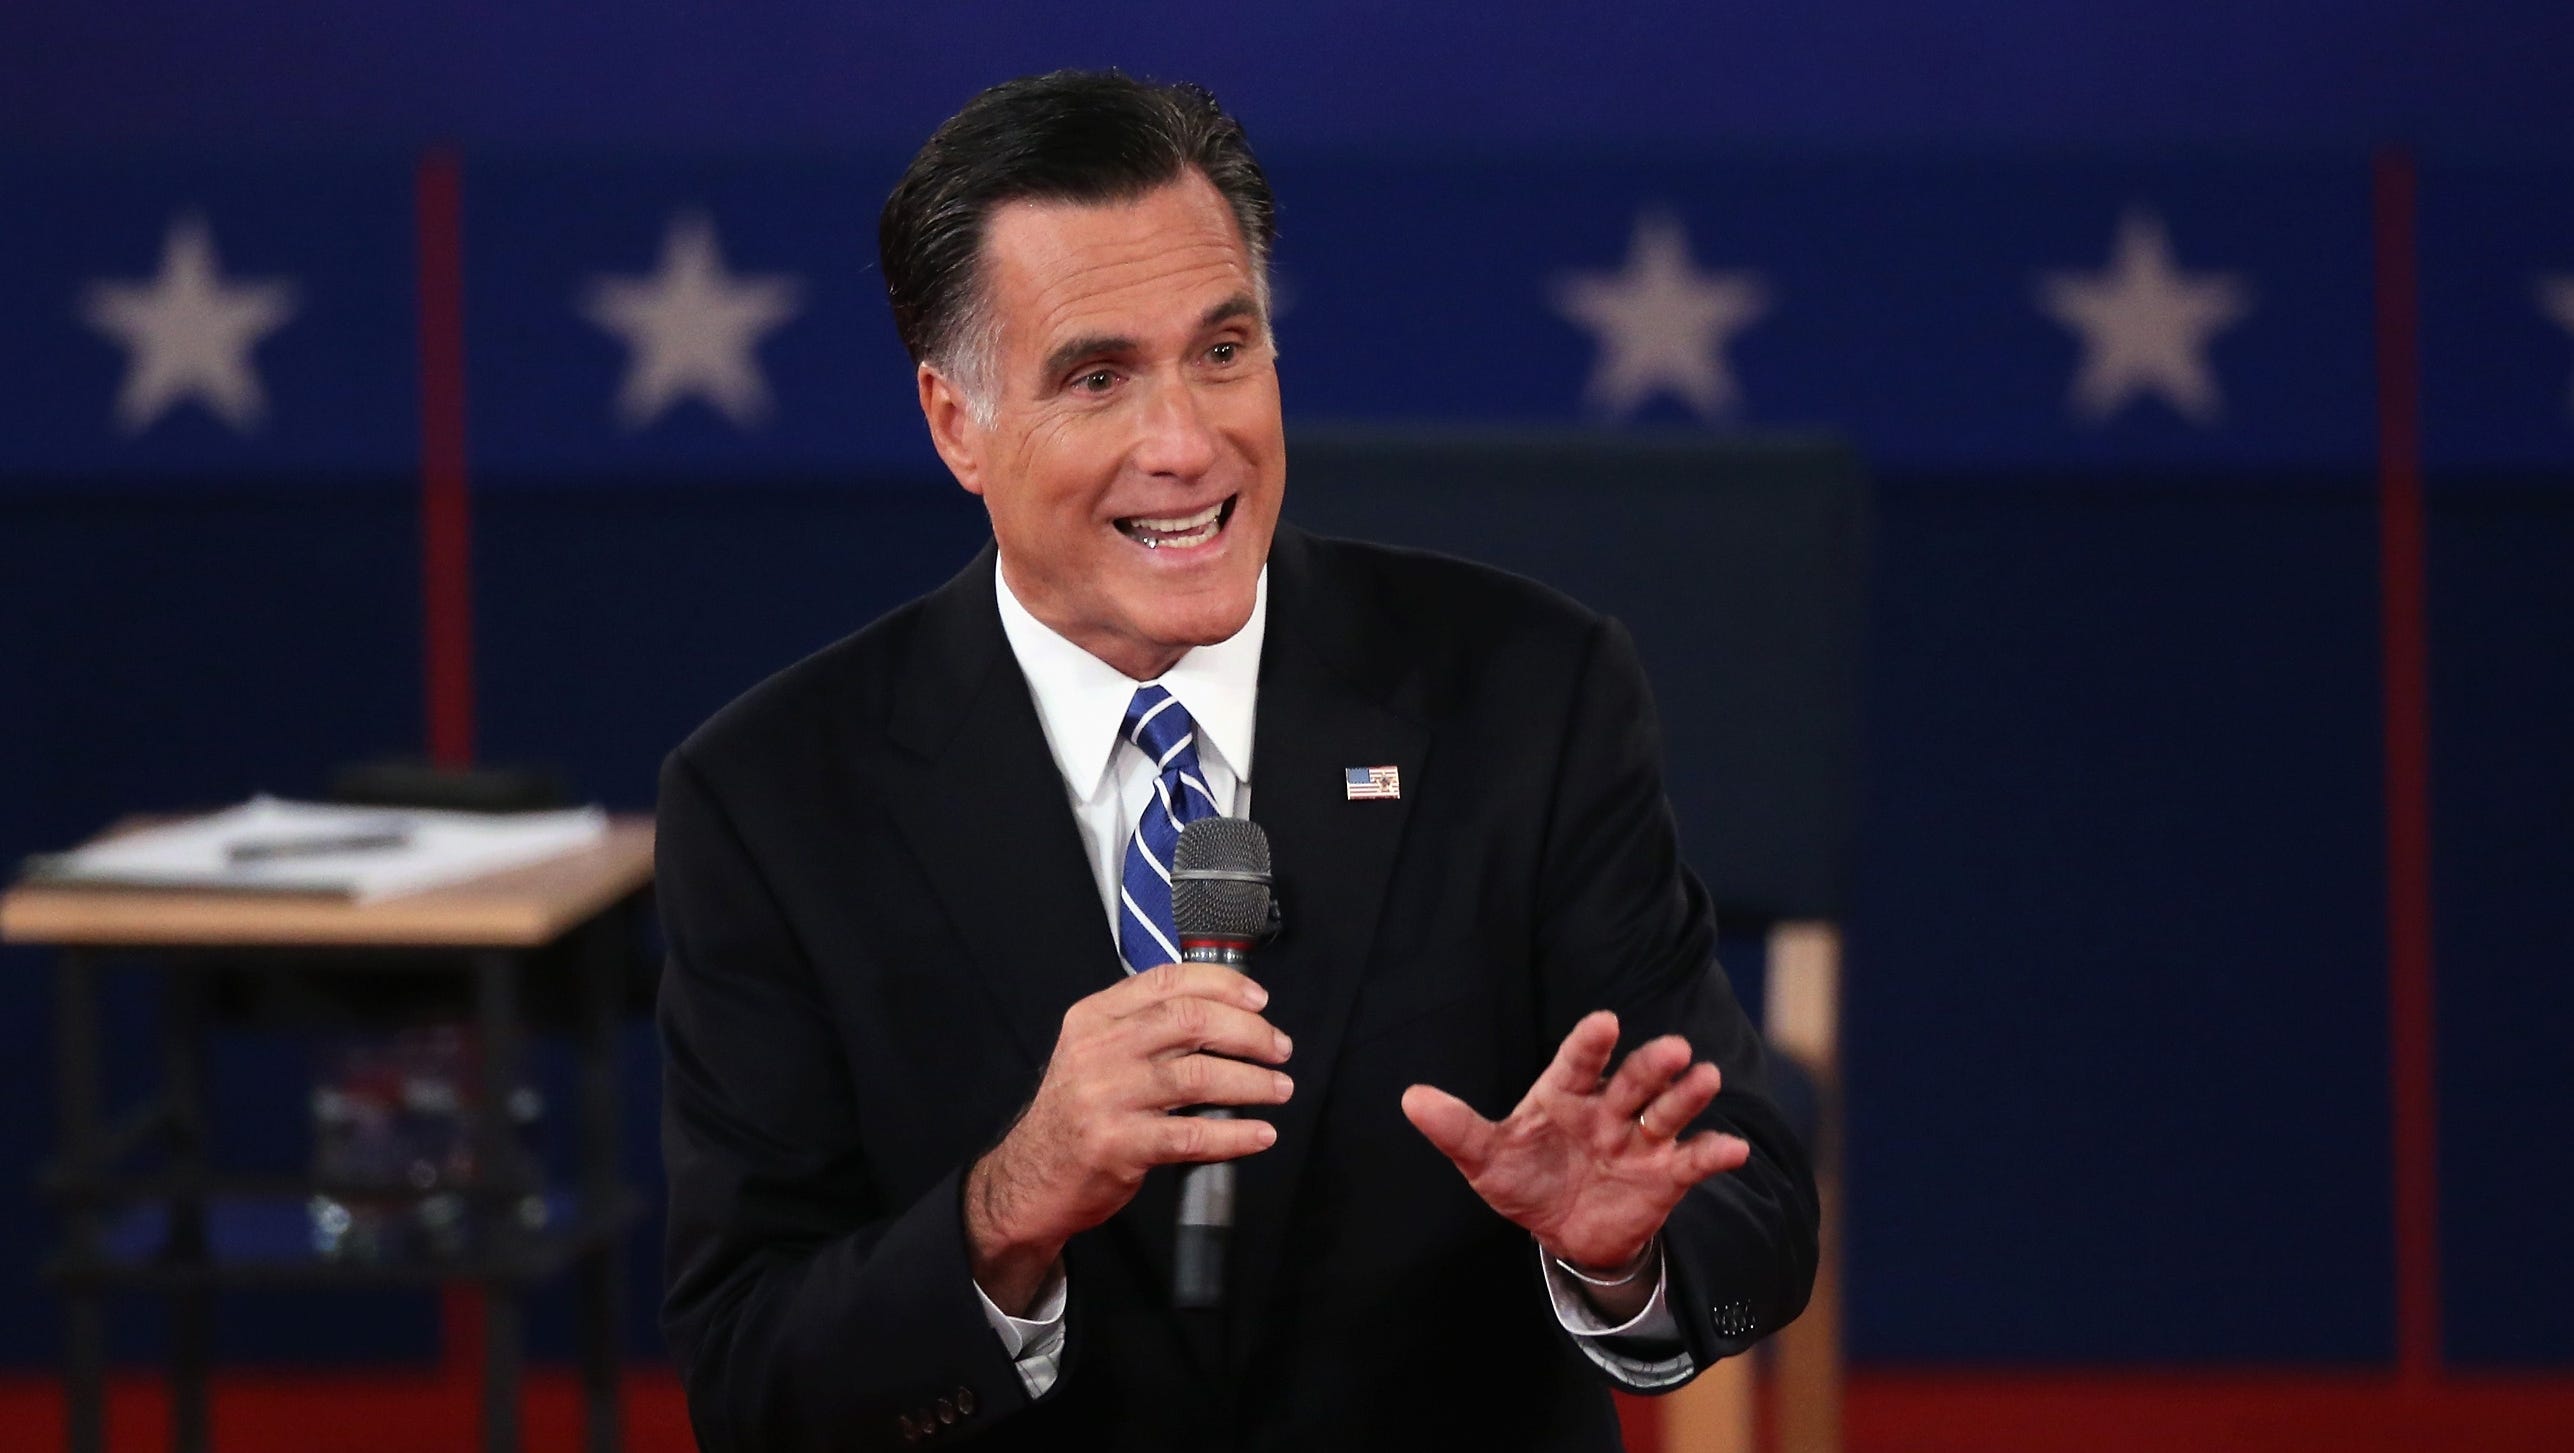 Romney binder jokes